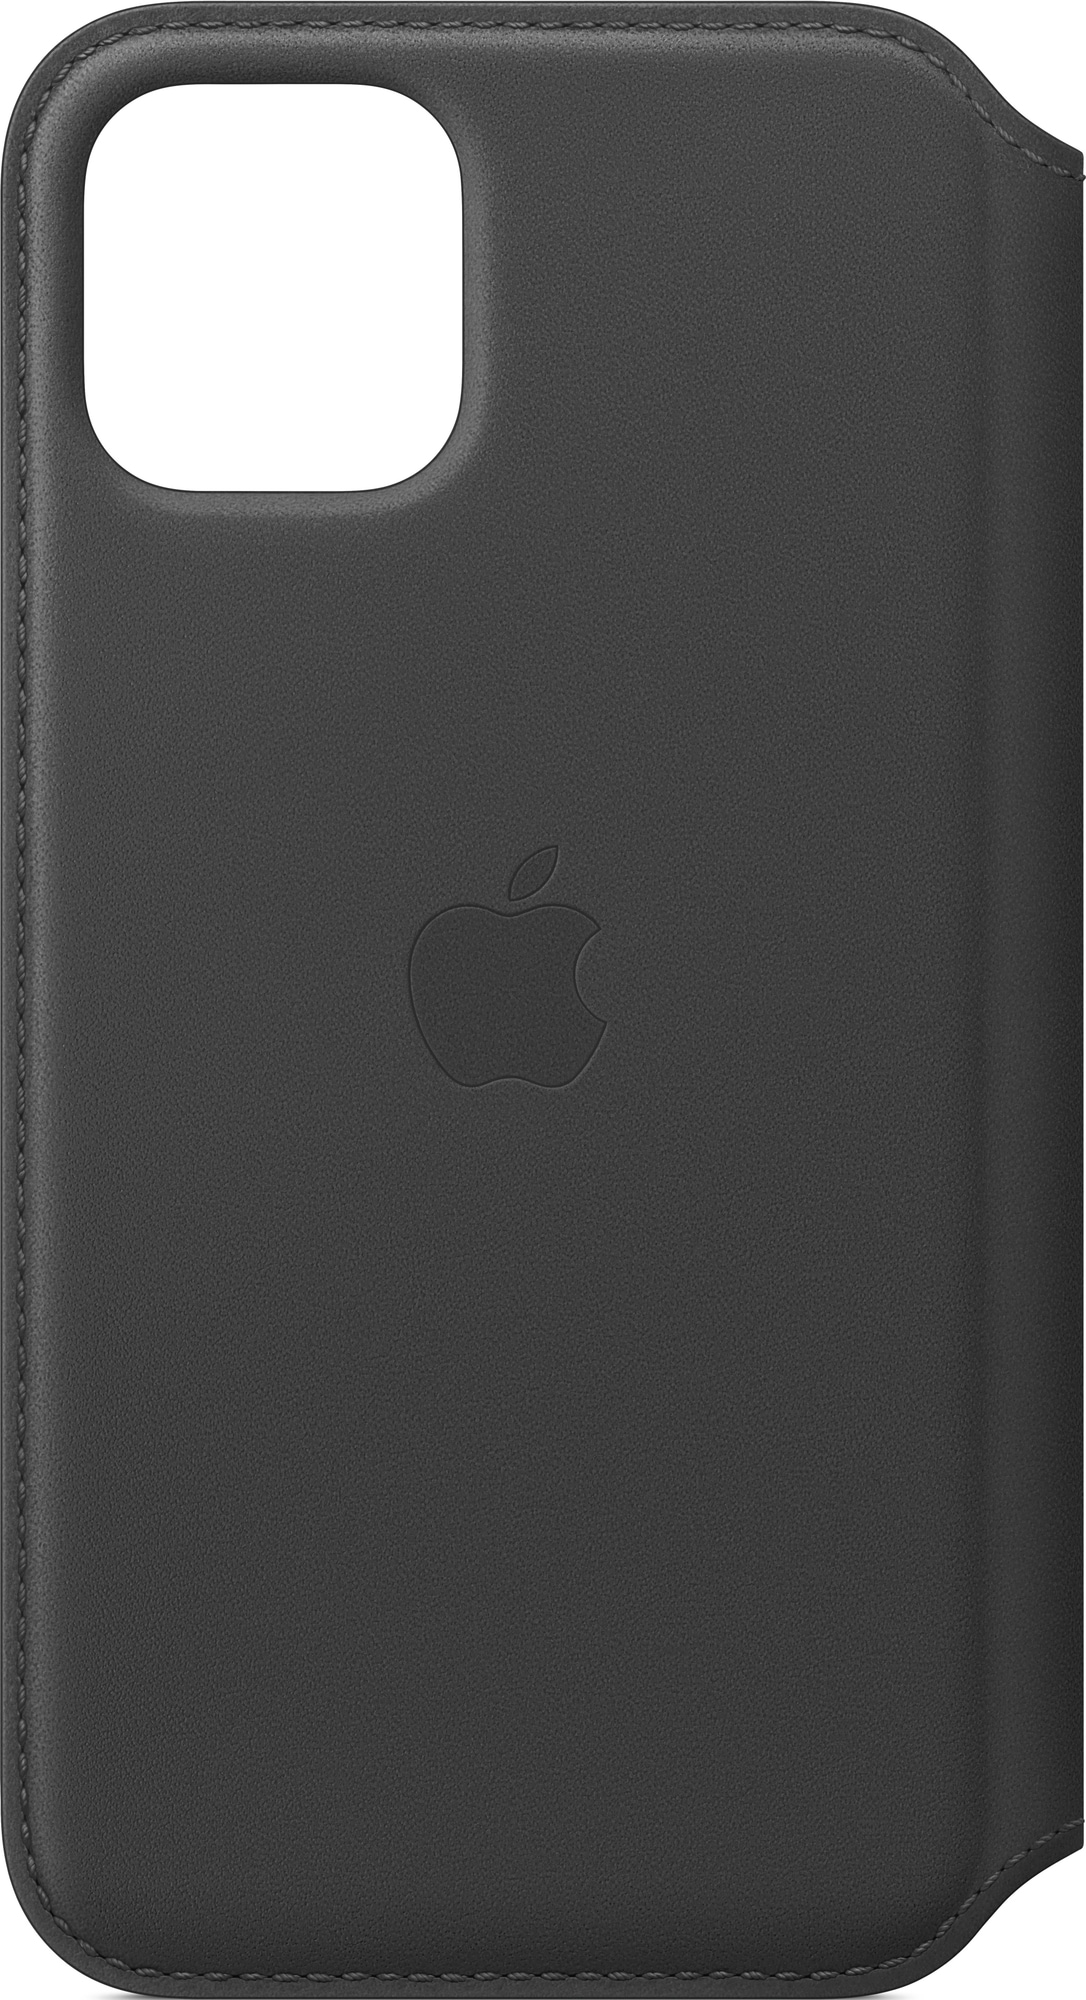 iPhone 11 Pro foliodeksel i skinn (sort) - Deksler og etui til mobiltelefon  - Elkjøp